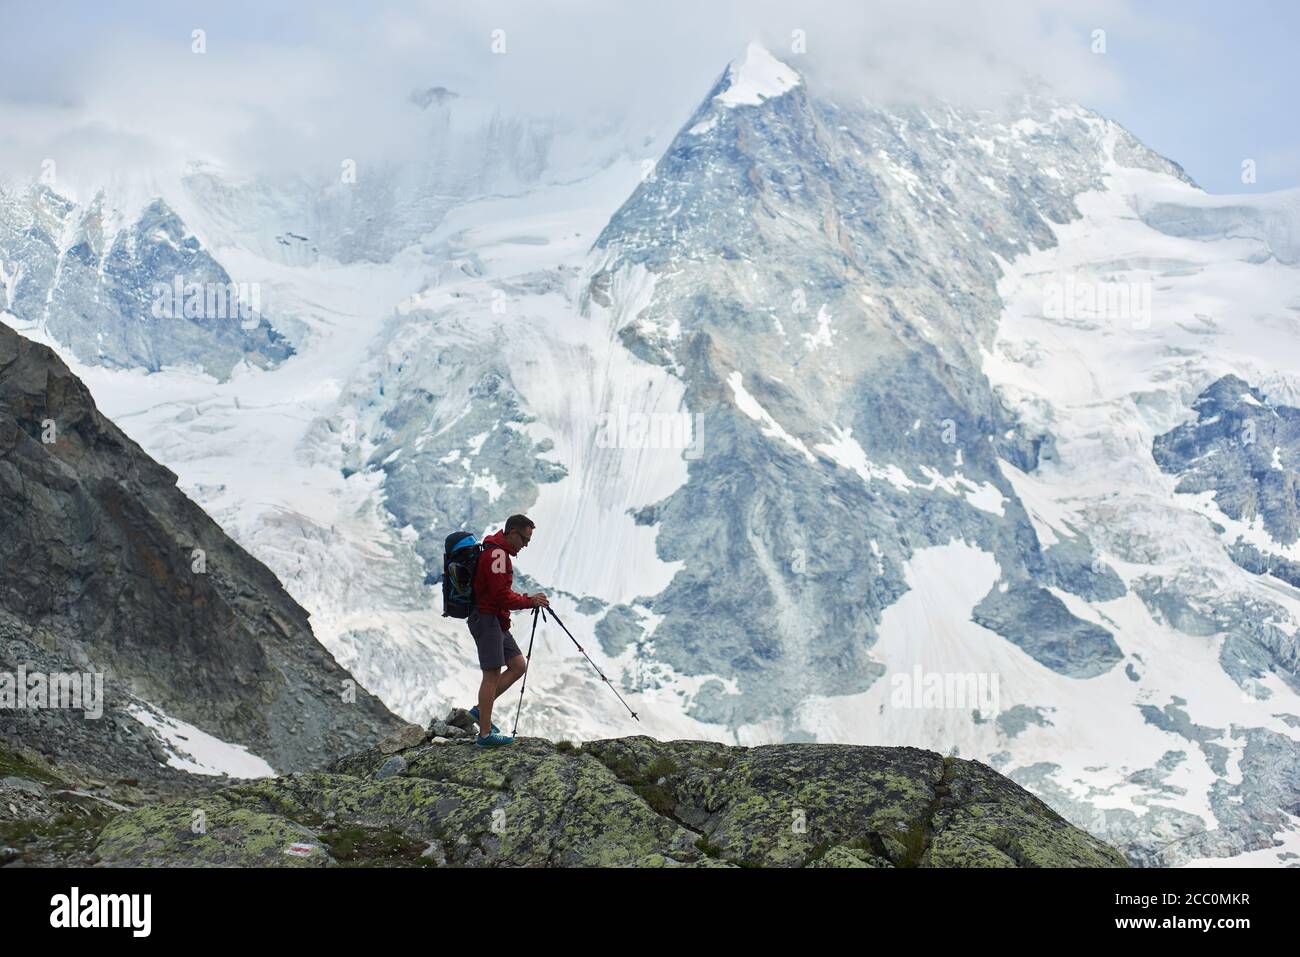 Photo horizontale de l'incroyable, rocailleux Mont Ober Gabelhorn dans la neige dans les Alpes de Pennine en Suisse, situé entre Zermatt et Zinal, voyageur marchant avec des bâtons de trekking au premier plan Banque D'Images